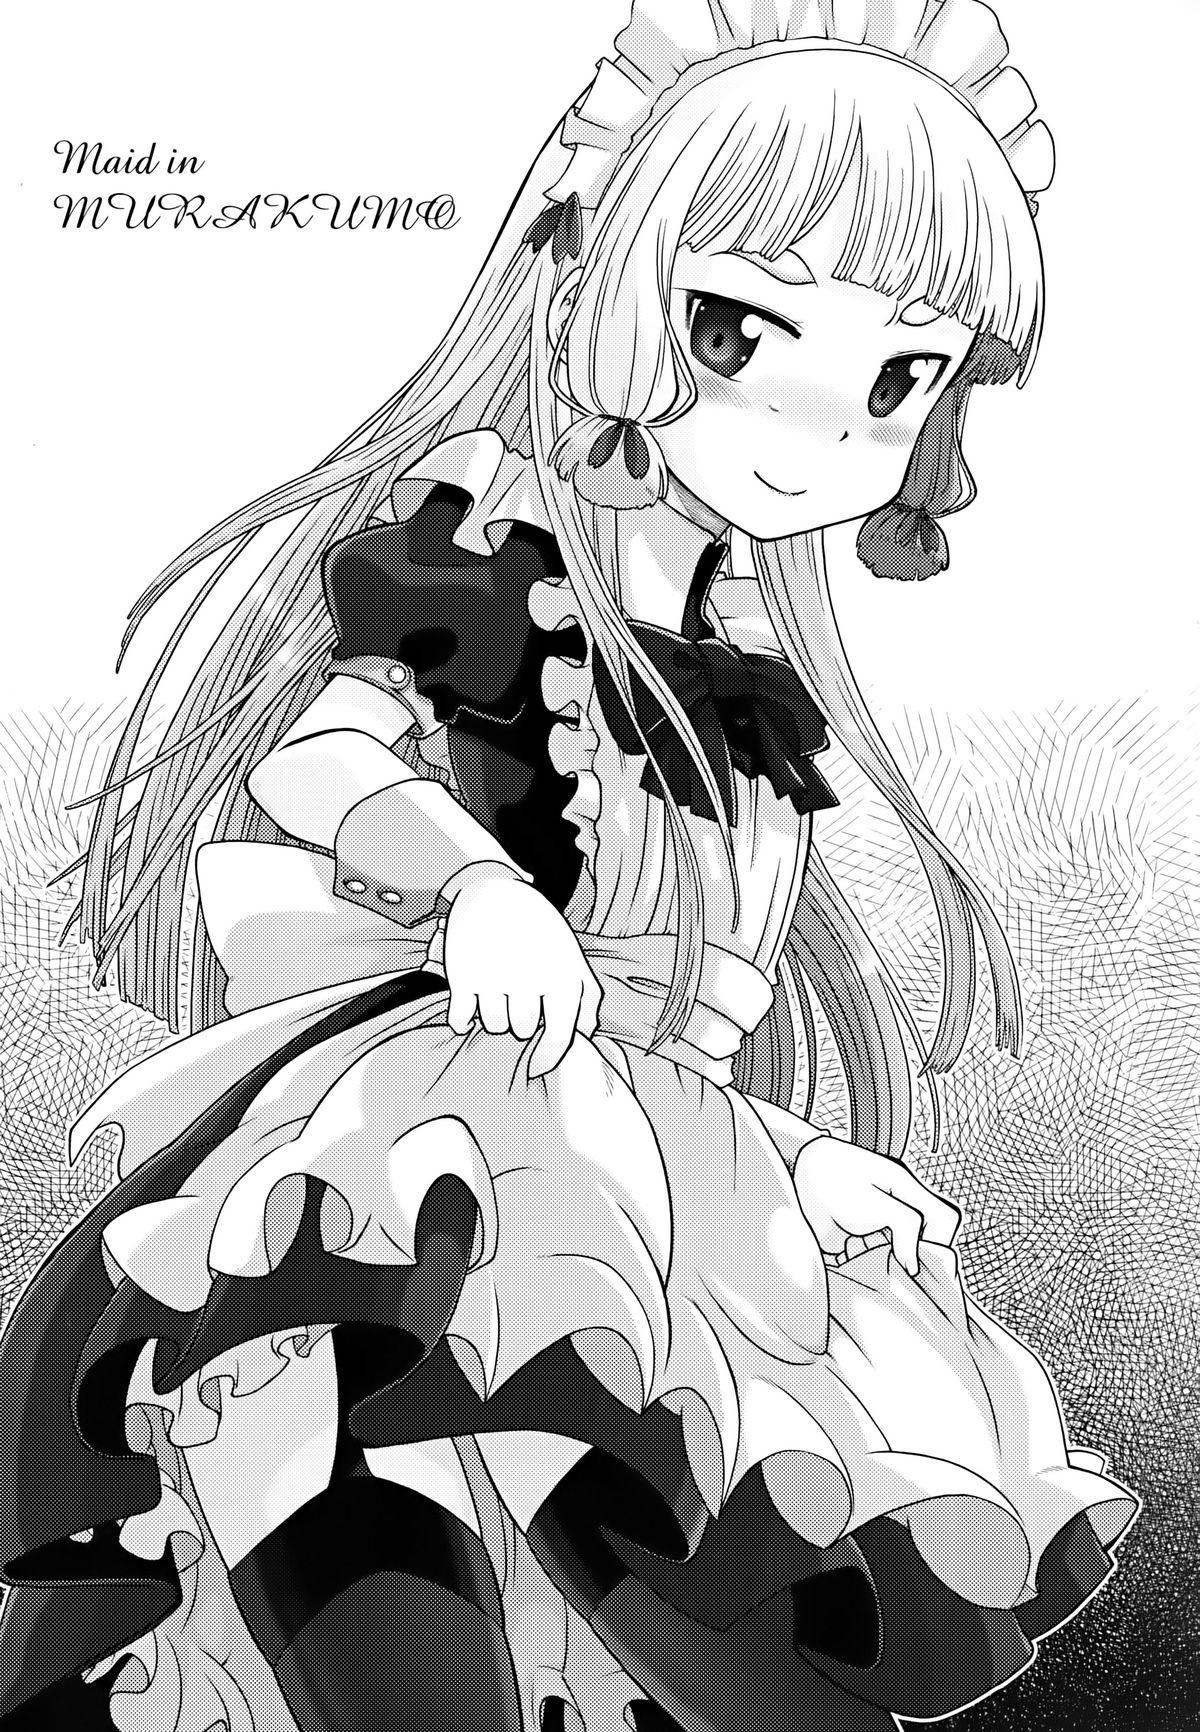 Maid in Murakumo 2